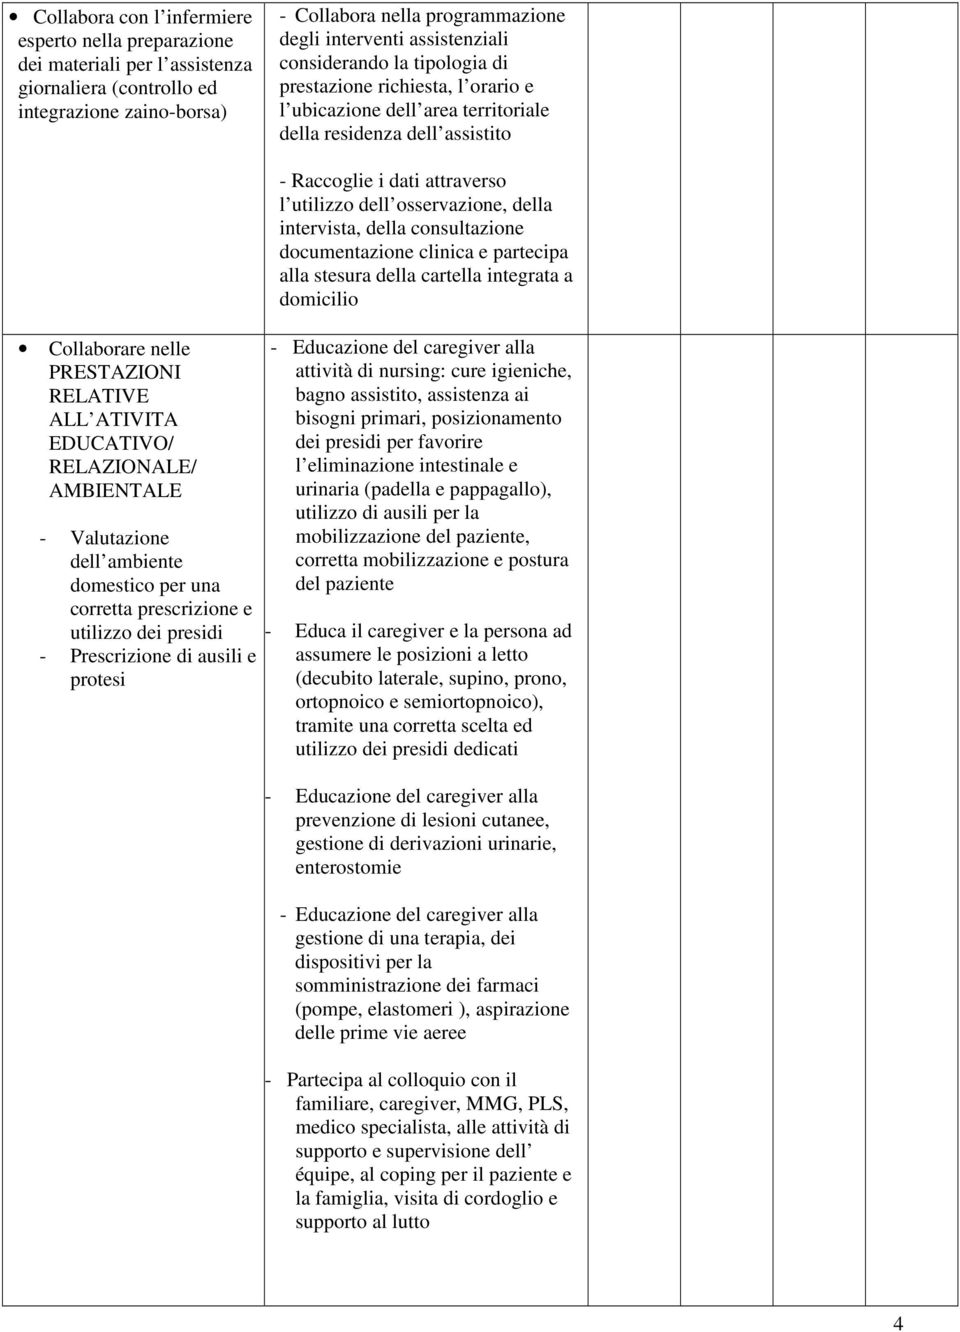 EDUCATIVO/ RELAZIONALE/ AMBIENTALE - Valutazione dell ambiente domestico per una corretta prescrizione e utilizzo dei presidi - Prescrizione di ausili e protesi - Raccoglie i dati attraverso l